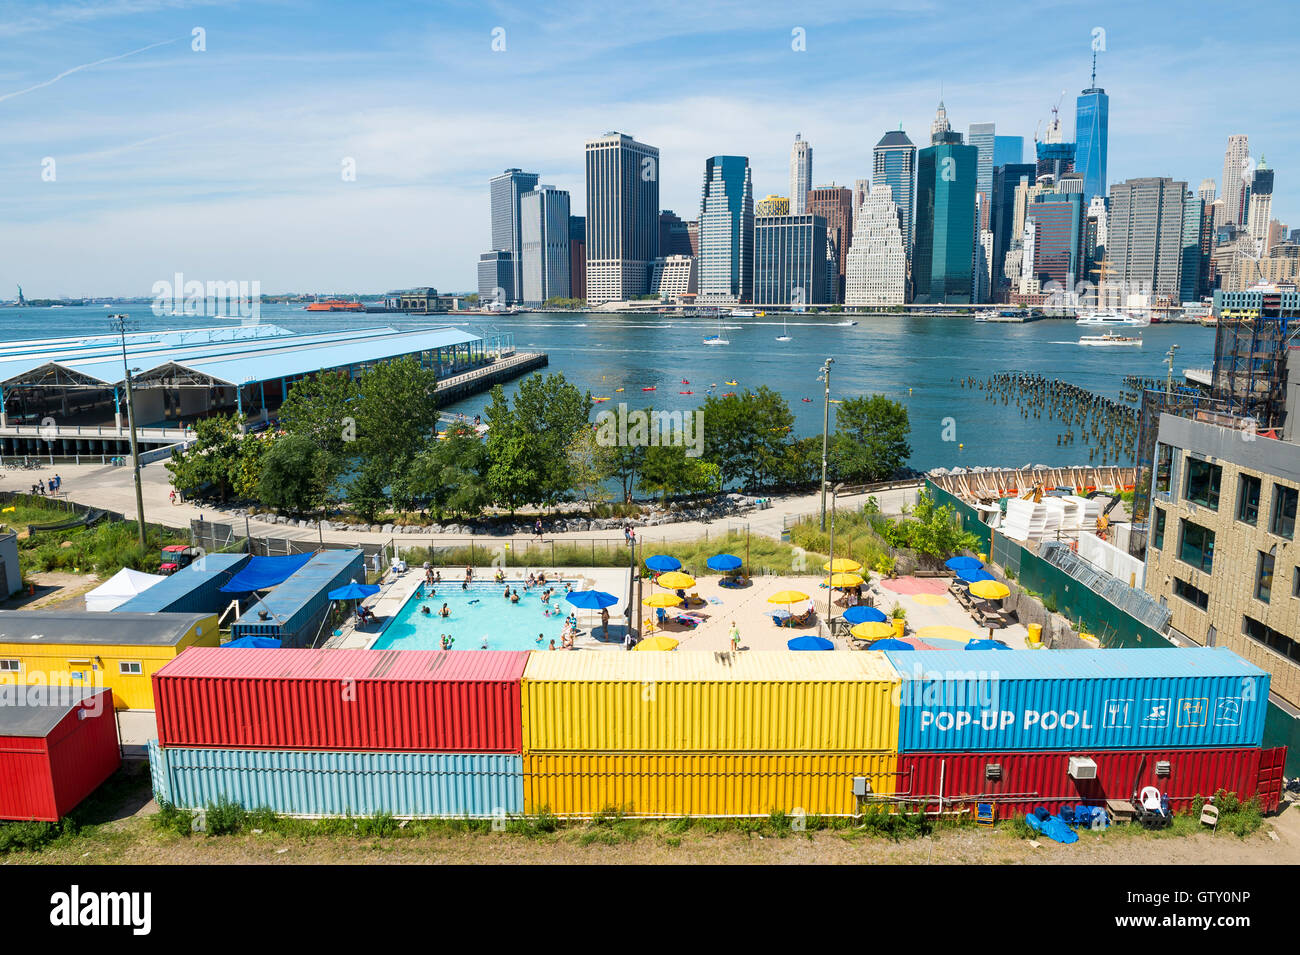 NEW YORK CITY - Agosto 27, 2016: un colorato pop-up piscina nel ponte di Brooklyn Park nella parte anteriore dello skyline di Manhattan. Foto Stock